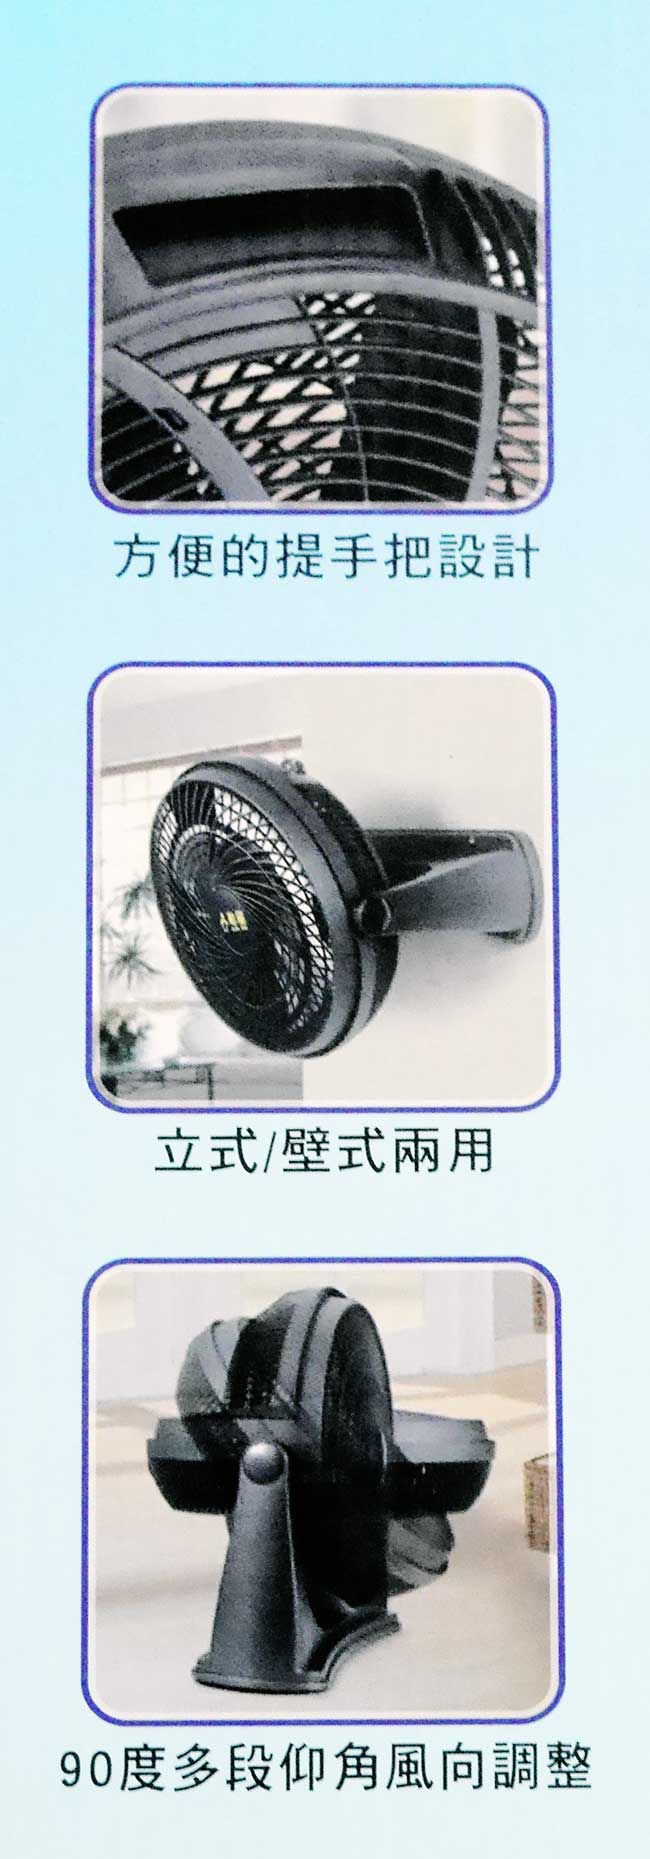 勳風9吋集風式空調循環扇(超值2入組) HF-7628